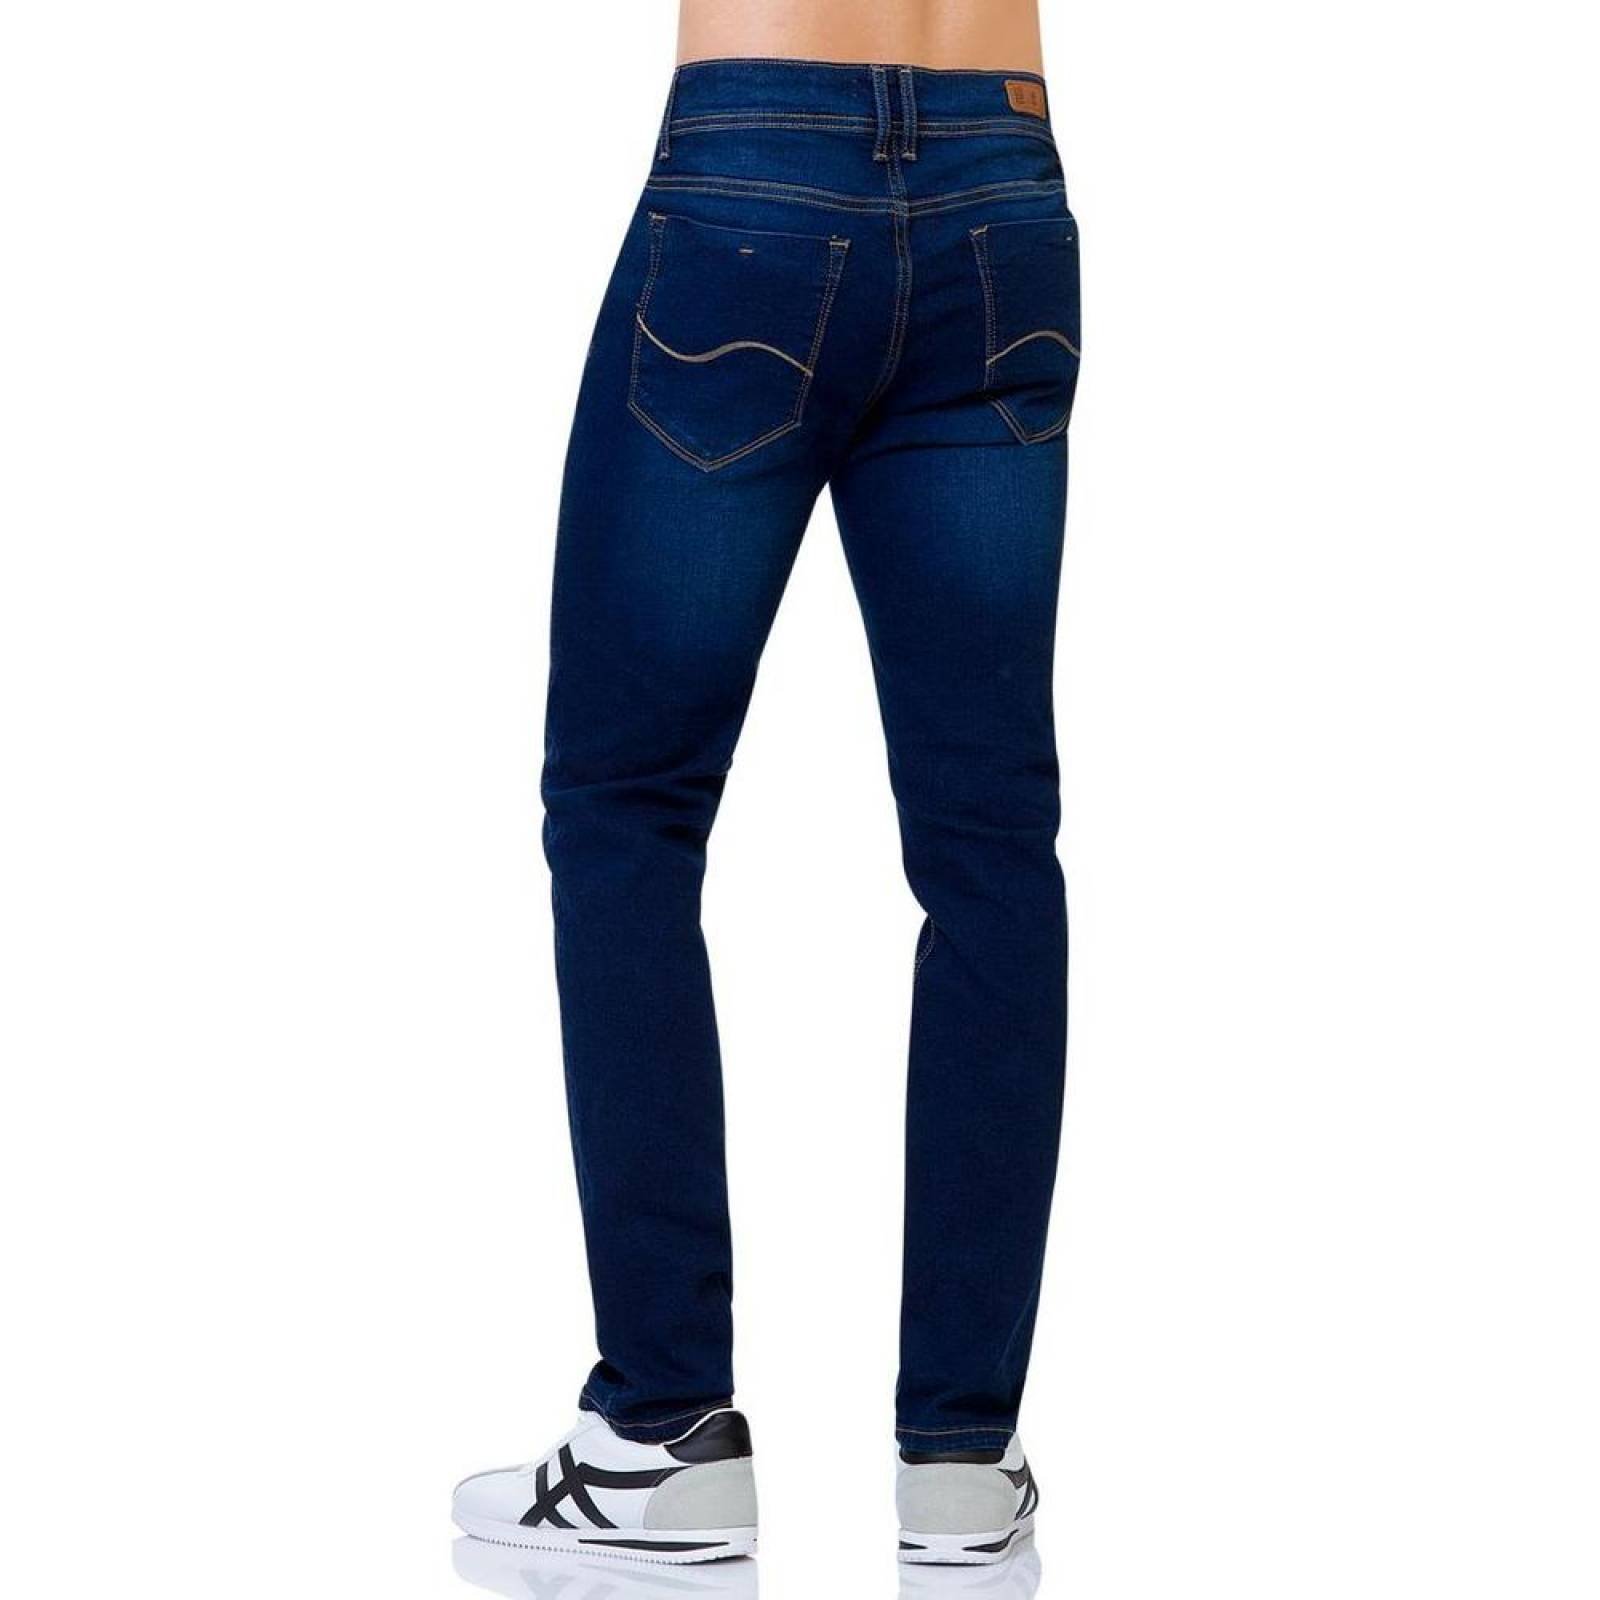 Jeans Básico Hombre Salvaje Tentación Stone 71800184 Mezclilla Stretch 